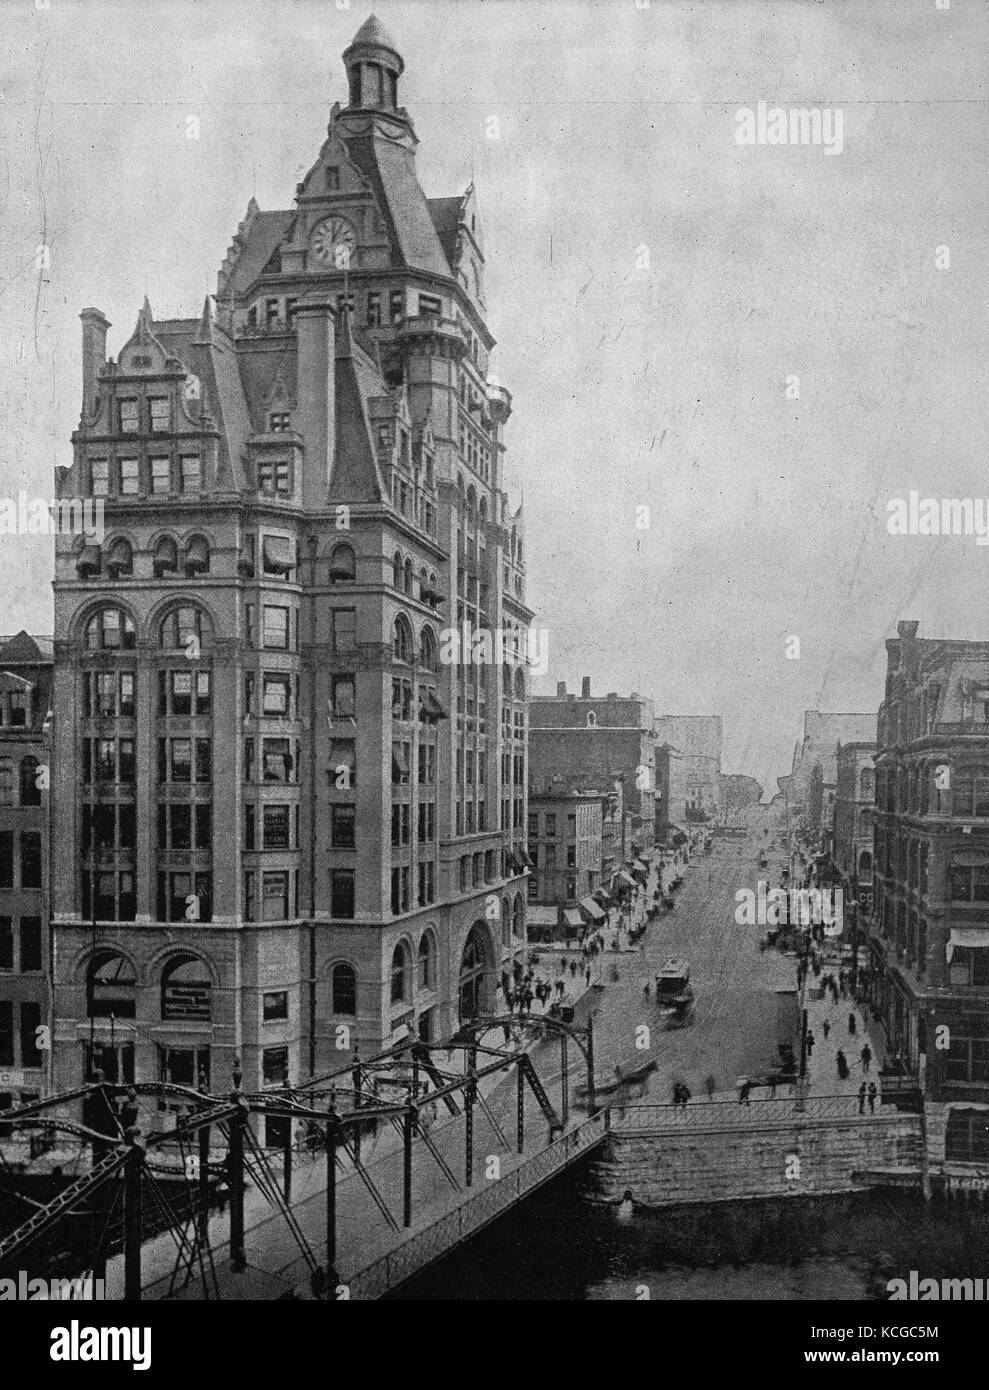 Vereinigte Staaten von Amerika, Gebäude in der Innenstadt von Milwaukee, eine Stadt im Bundesstaat Wisconsin, digital verbesserte Reproduktion einer historischen Foto aus dem (geschätzten) Jahr 1899 Stockfoto